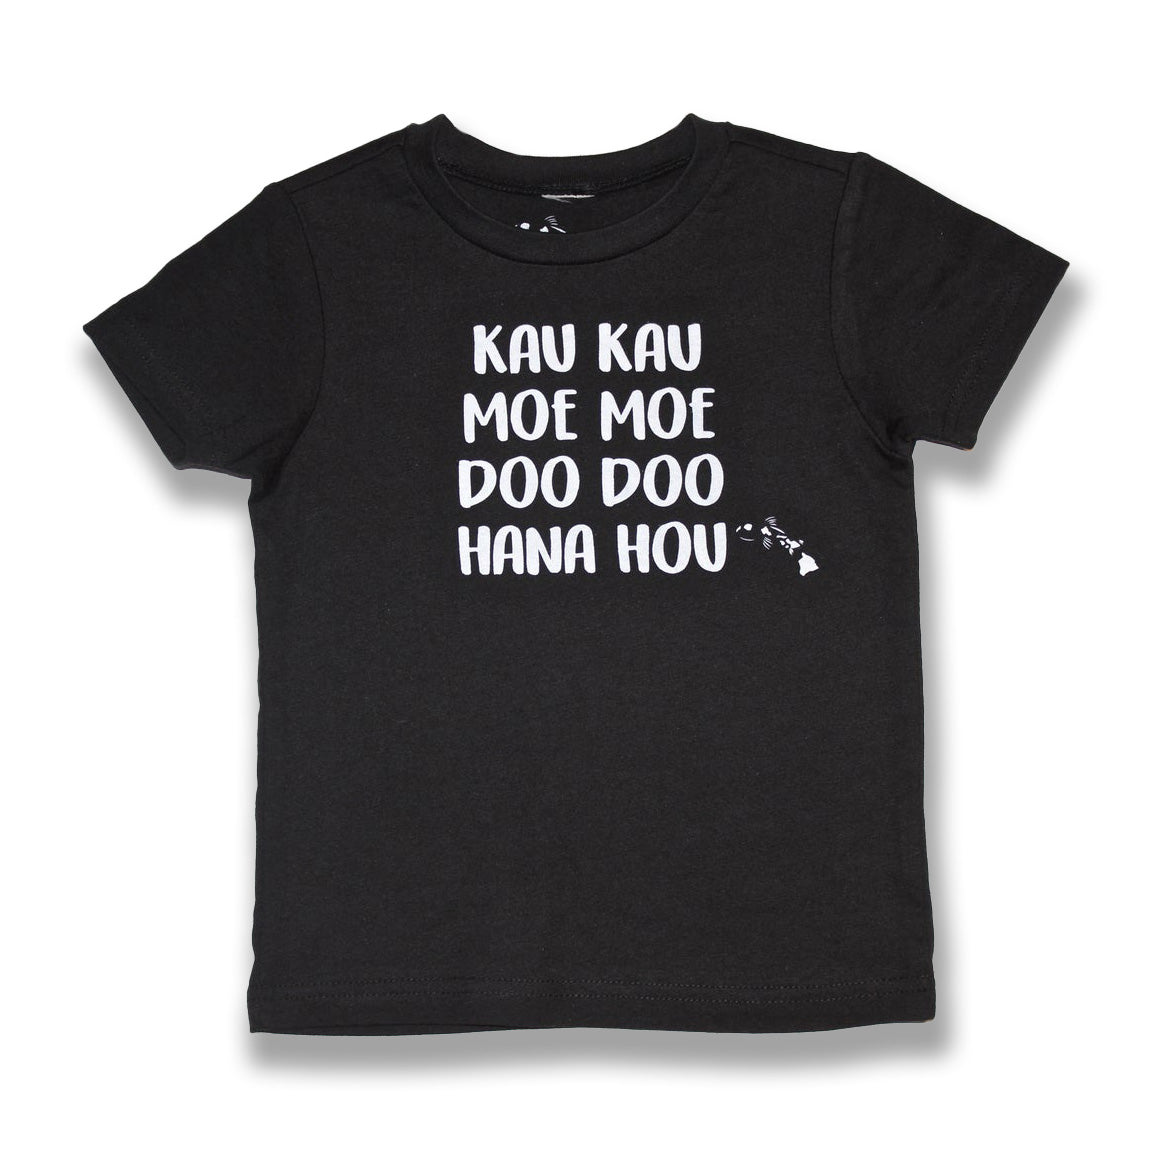 Pop-Up Mākeke - Malia and Company - Kau Kau, Moe Moe, Doo Doo, Hana Hou Keiki T-Shirt - Black - Front View